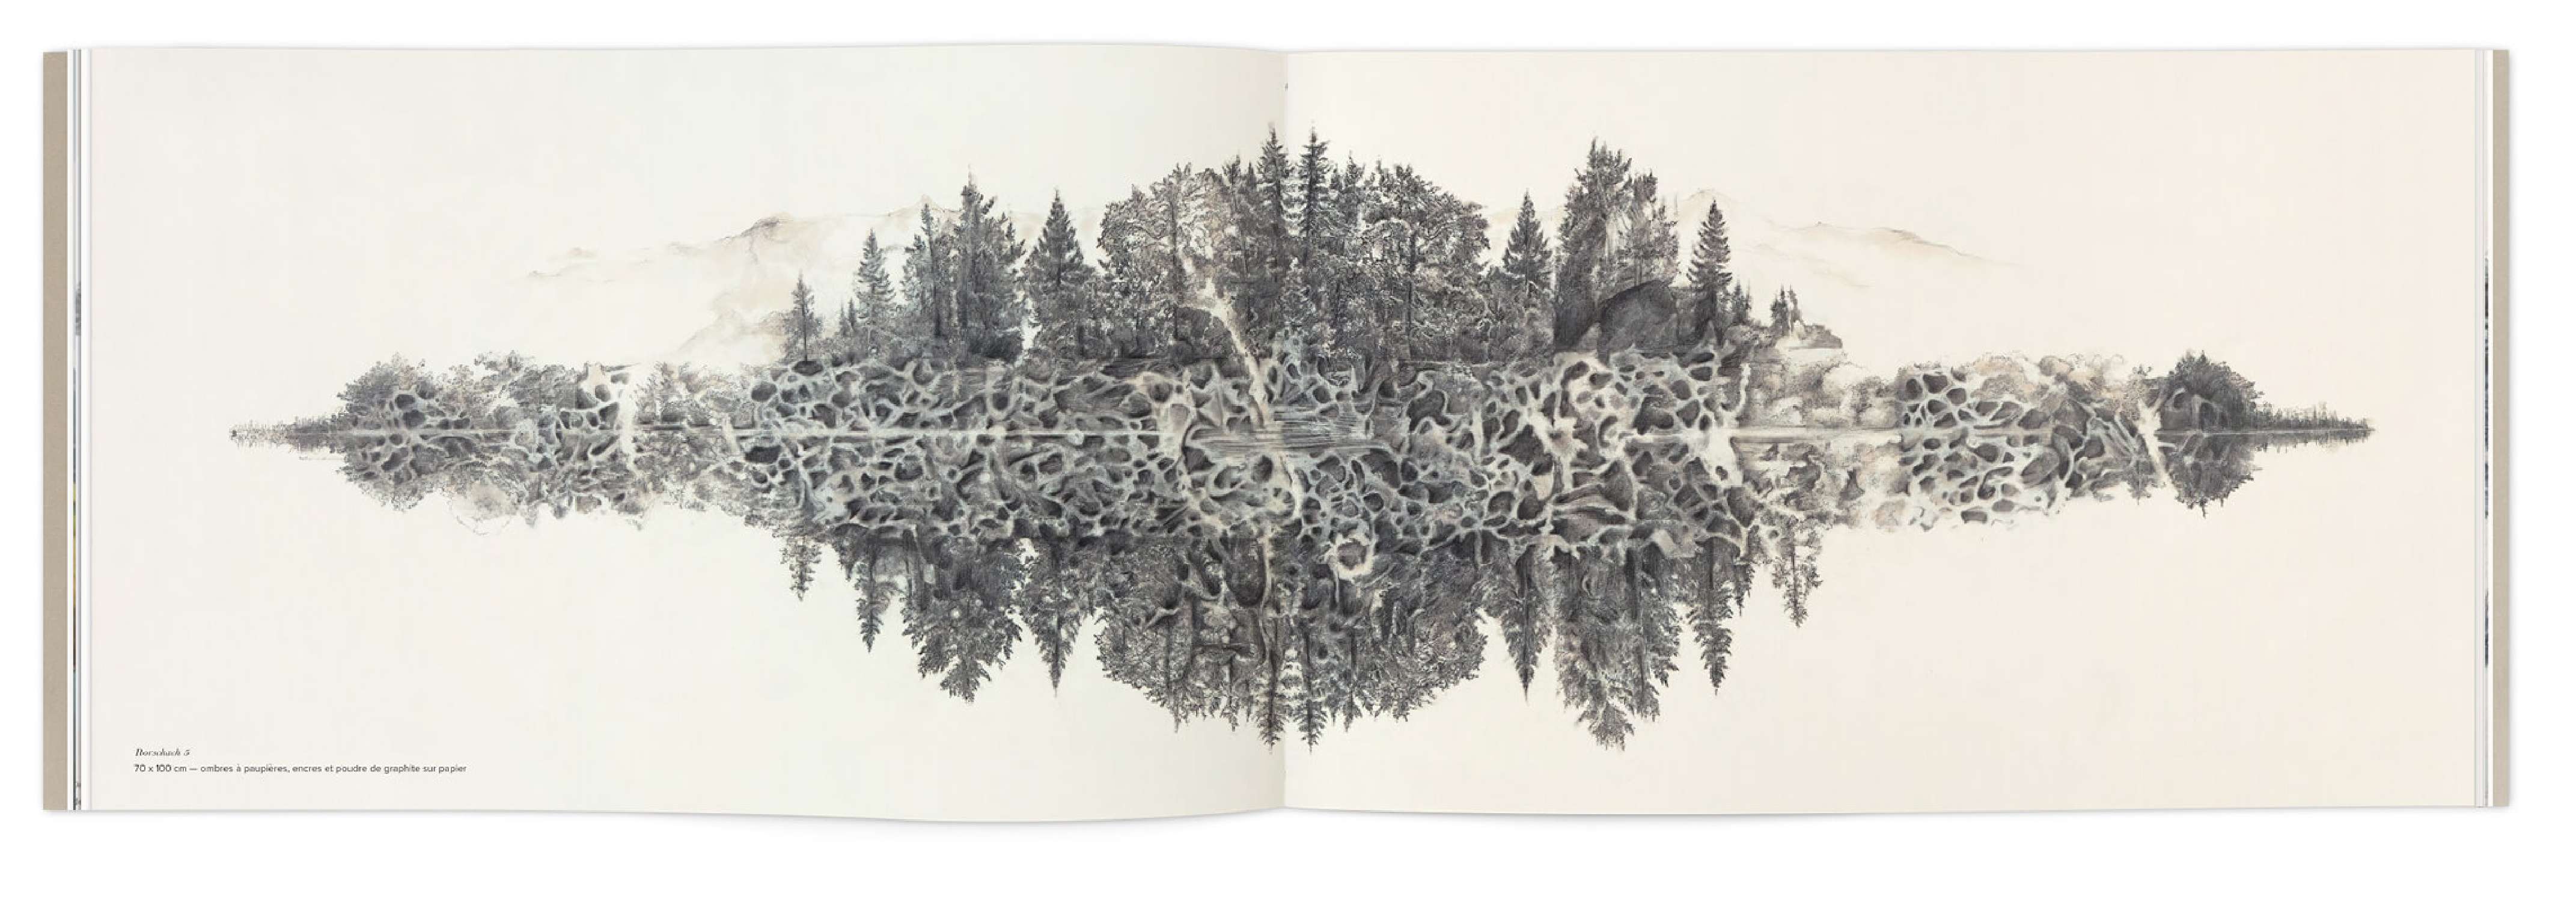 Les dessins de paysage sous la neige d'Hélène Muheim dans le livre quelque part dans l'inachevé, Design graphique IchetKar